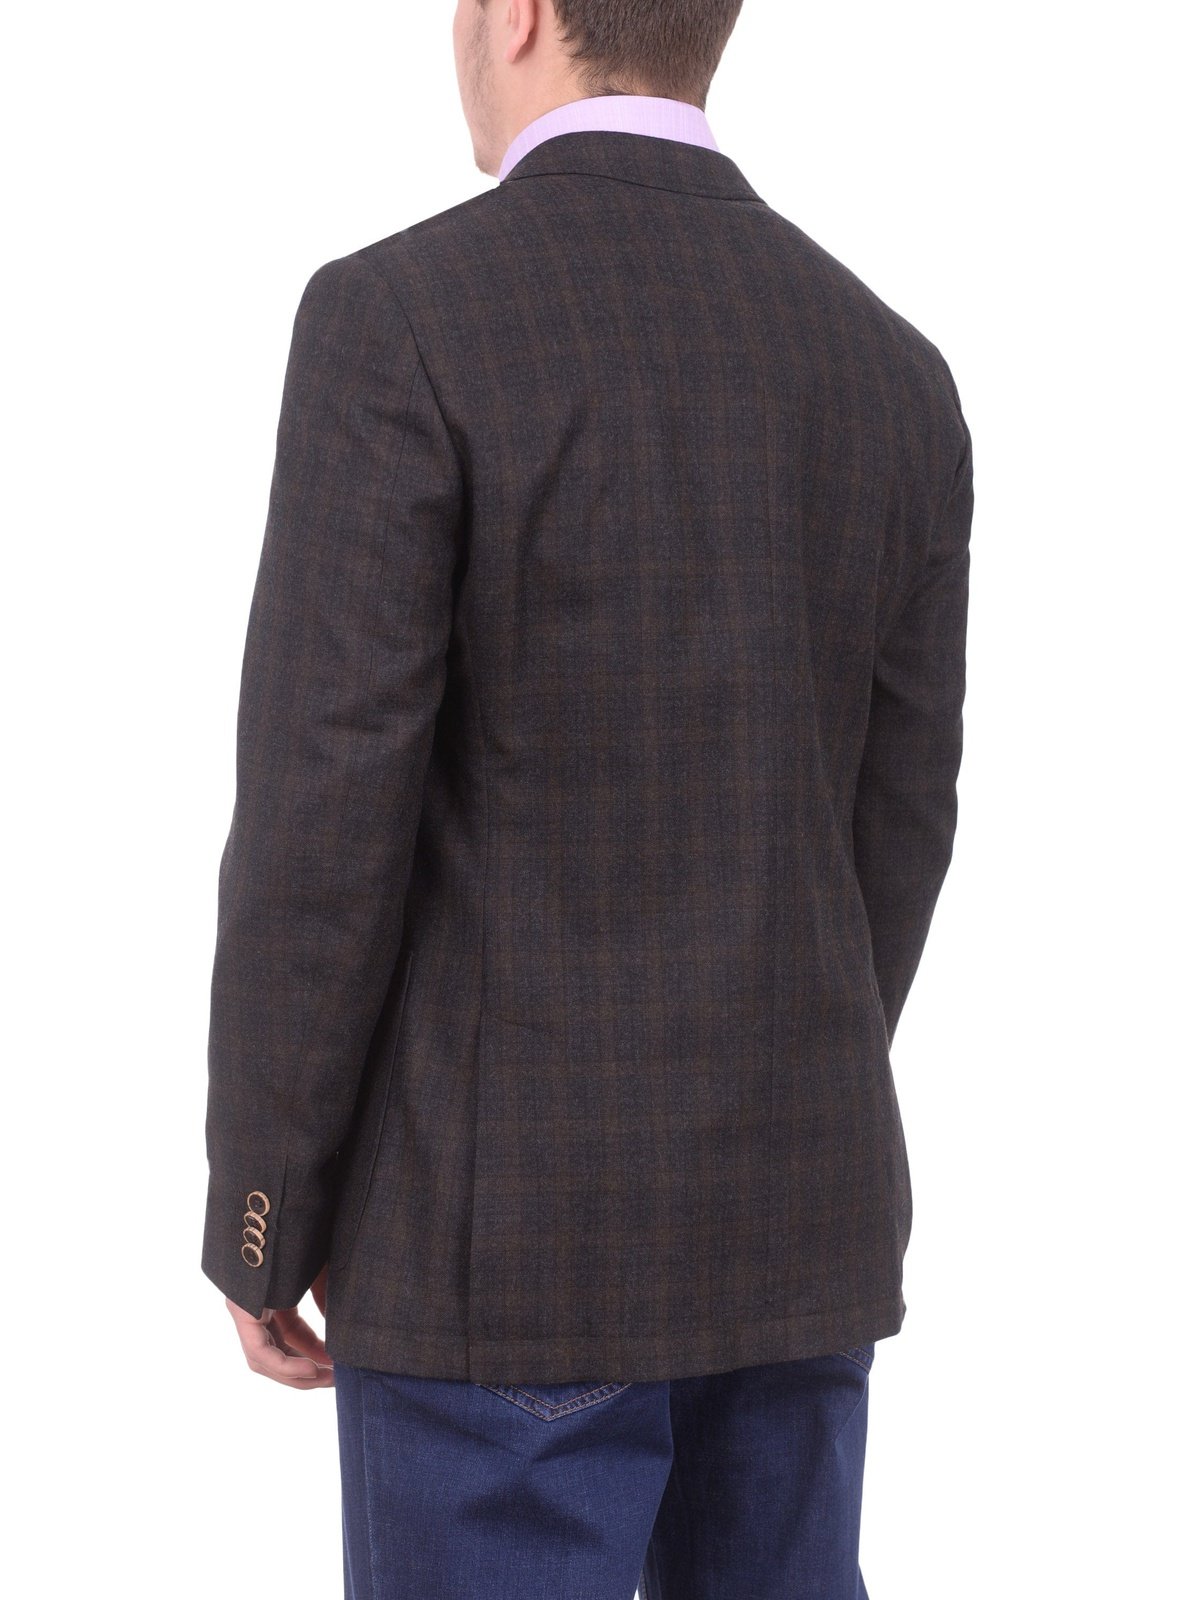 Zanetti BLAZERS Zanetti Modern Fit Brown Plaid Wool Blazer Sportcoat With Patch Pockets